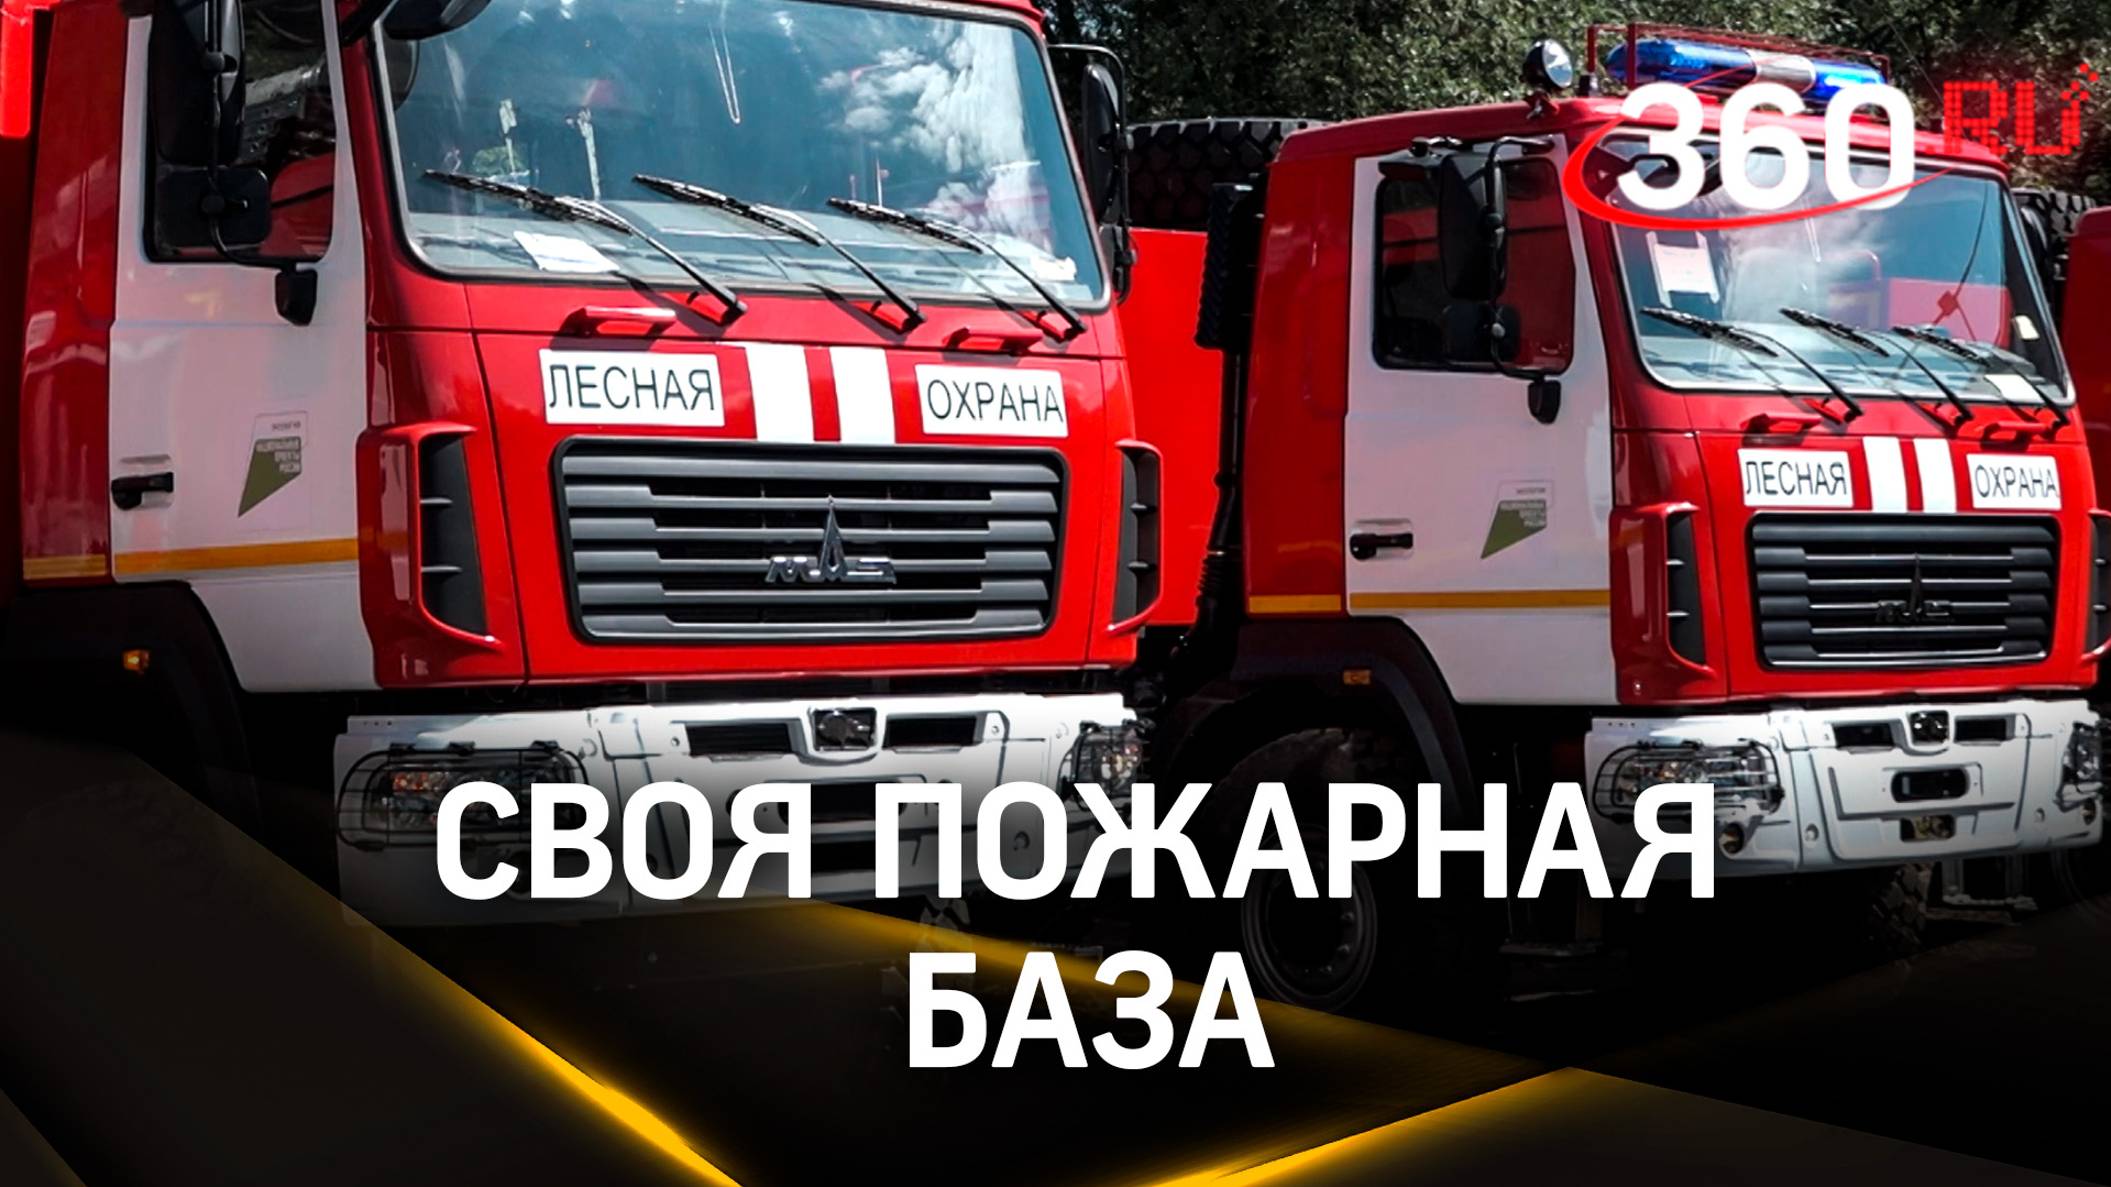 Реконструкция лесопожарной станции закончилась в Балашихе